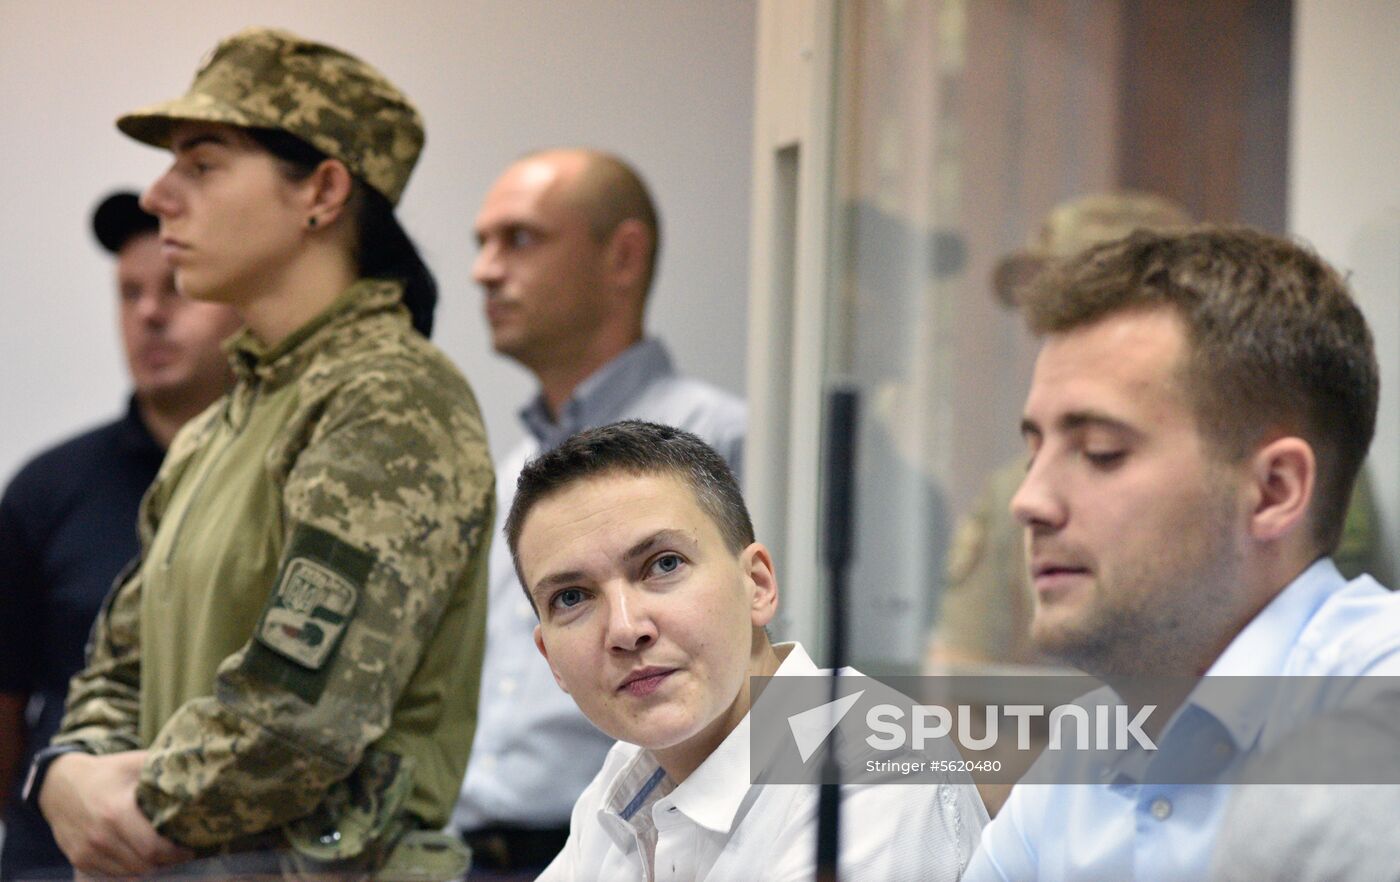 Kiev court hears appeal against Nadezhda Savchenko's arrest